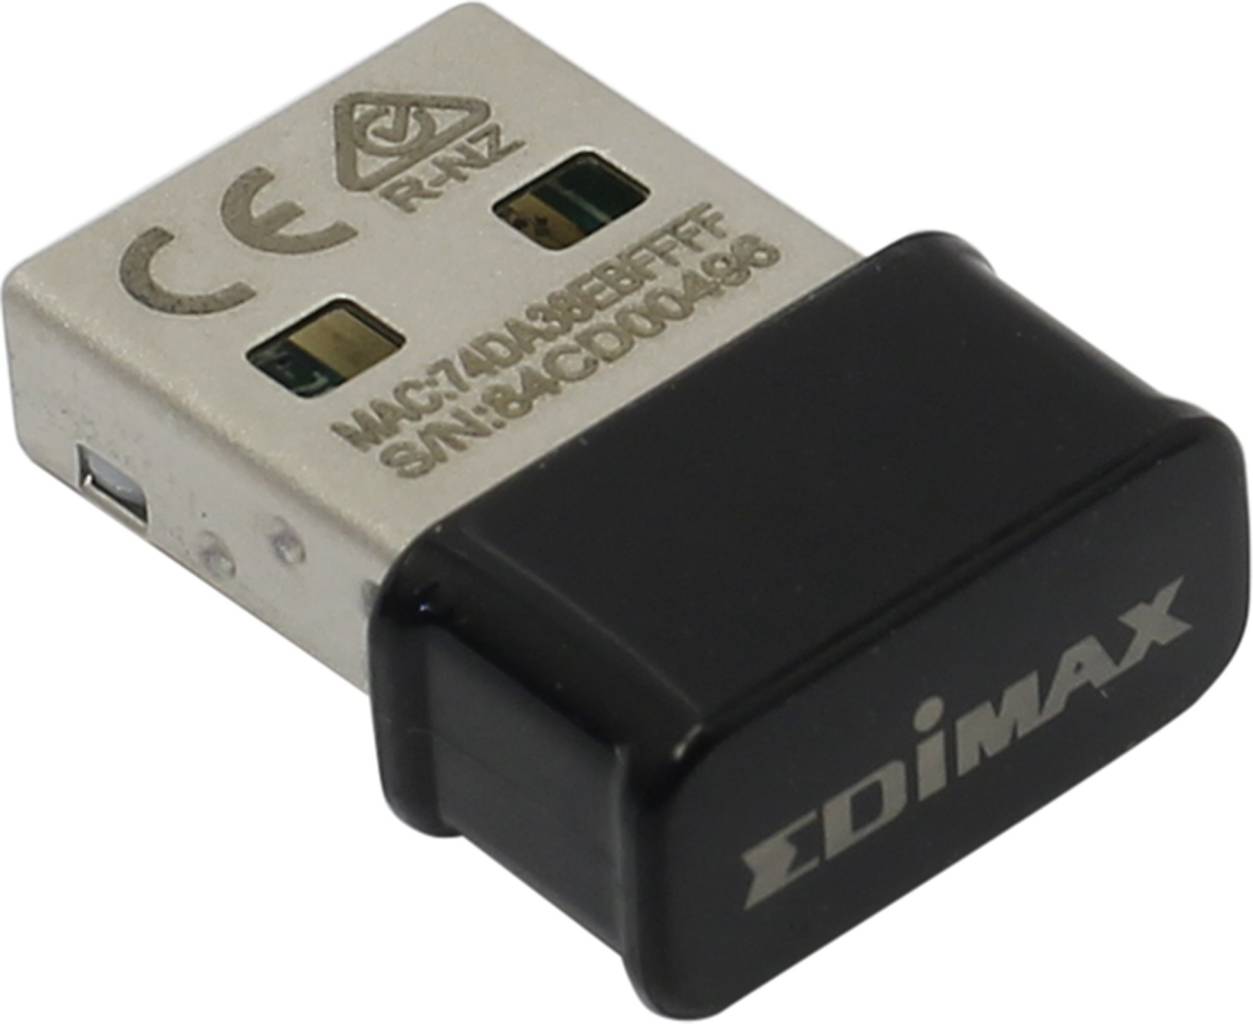    USB2.0 Edimax [EW-7822ULC] (802.11a/b/g/n/ac, 867Mbps)